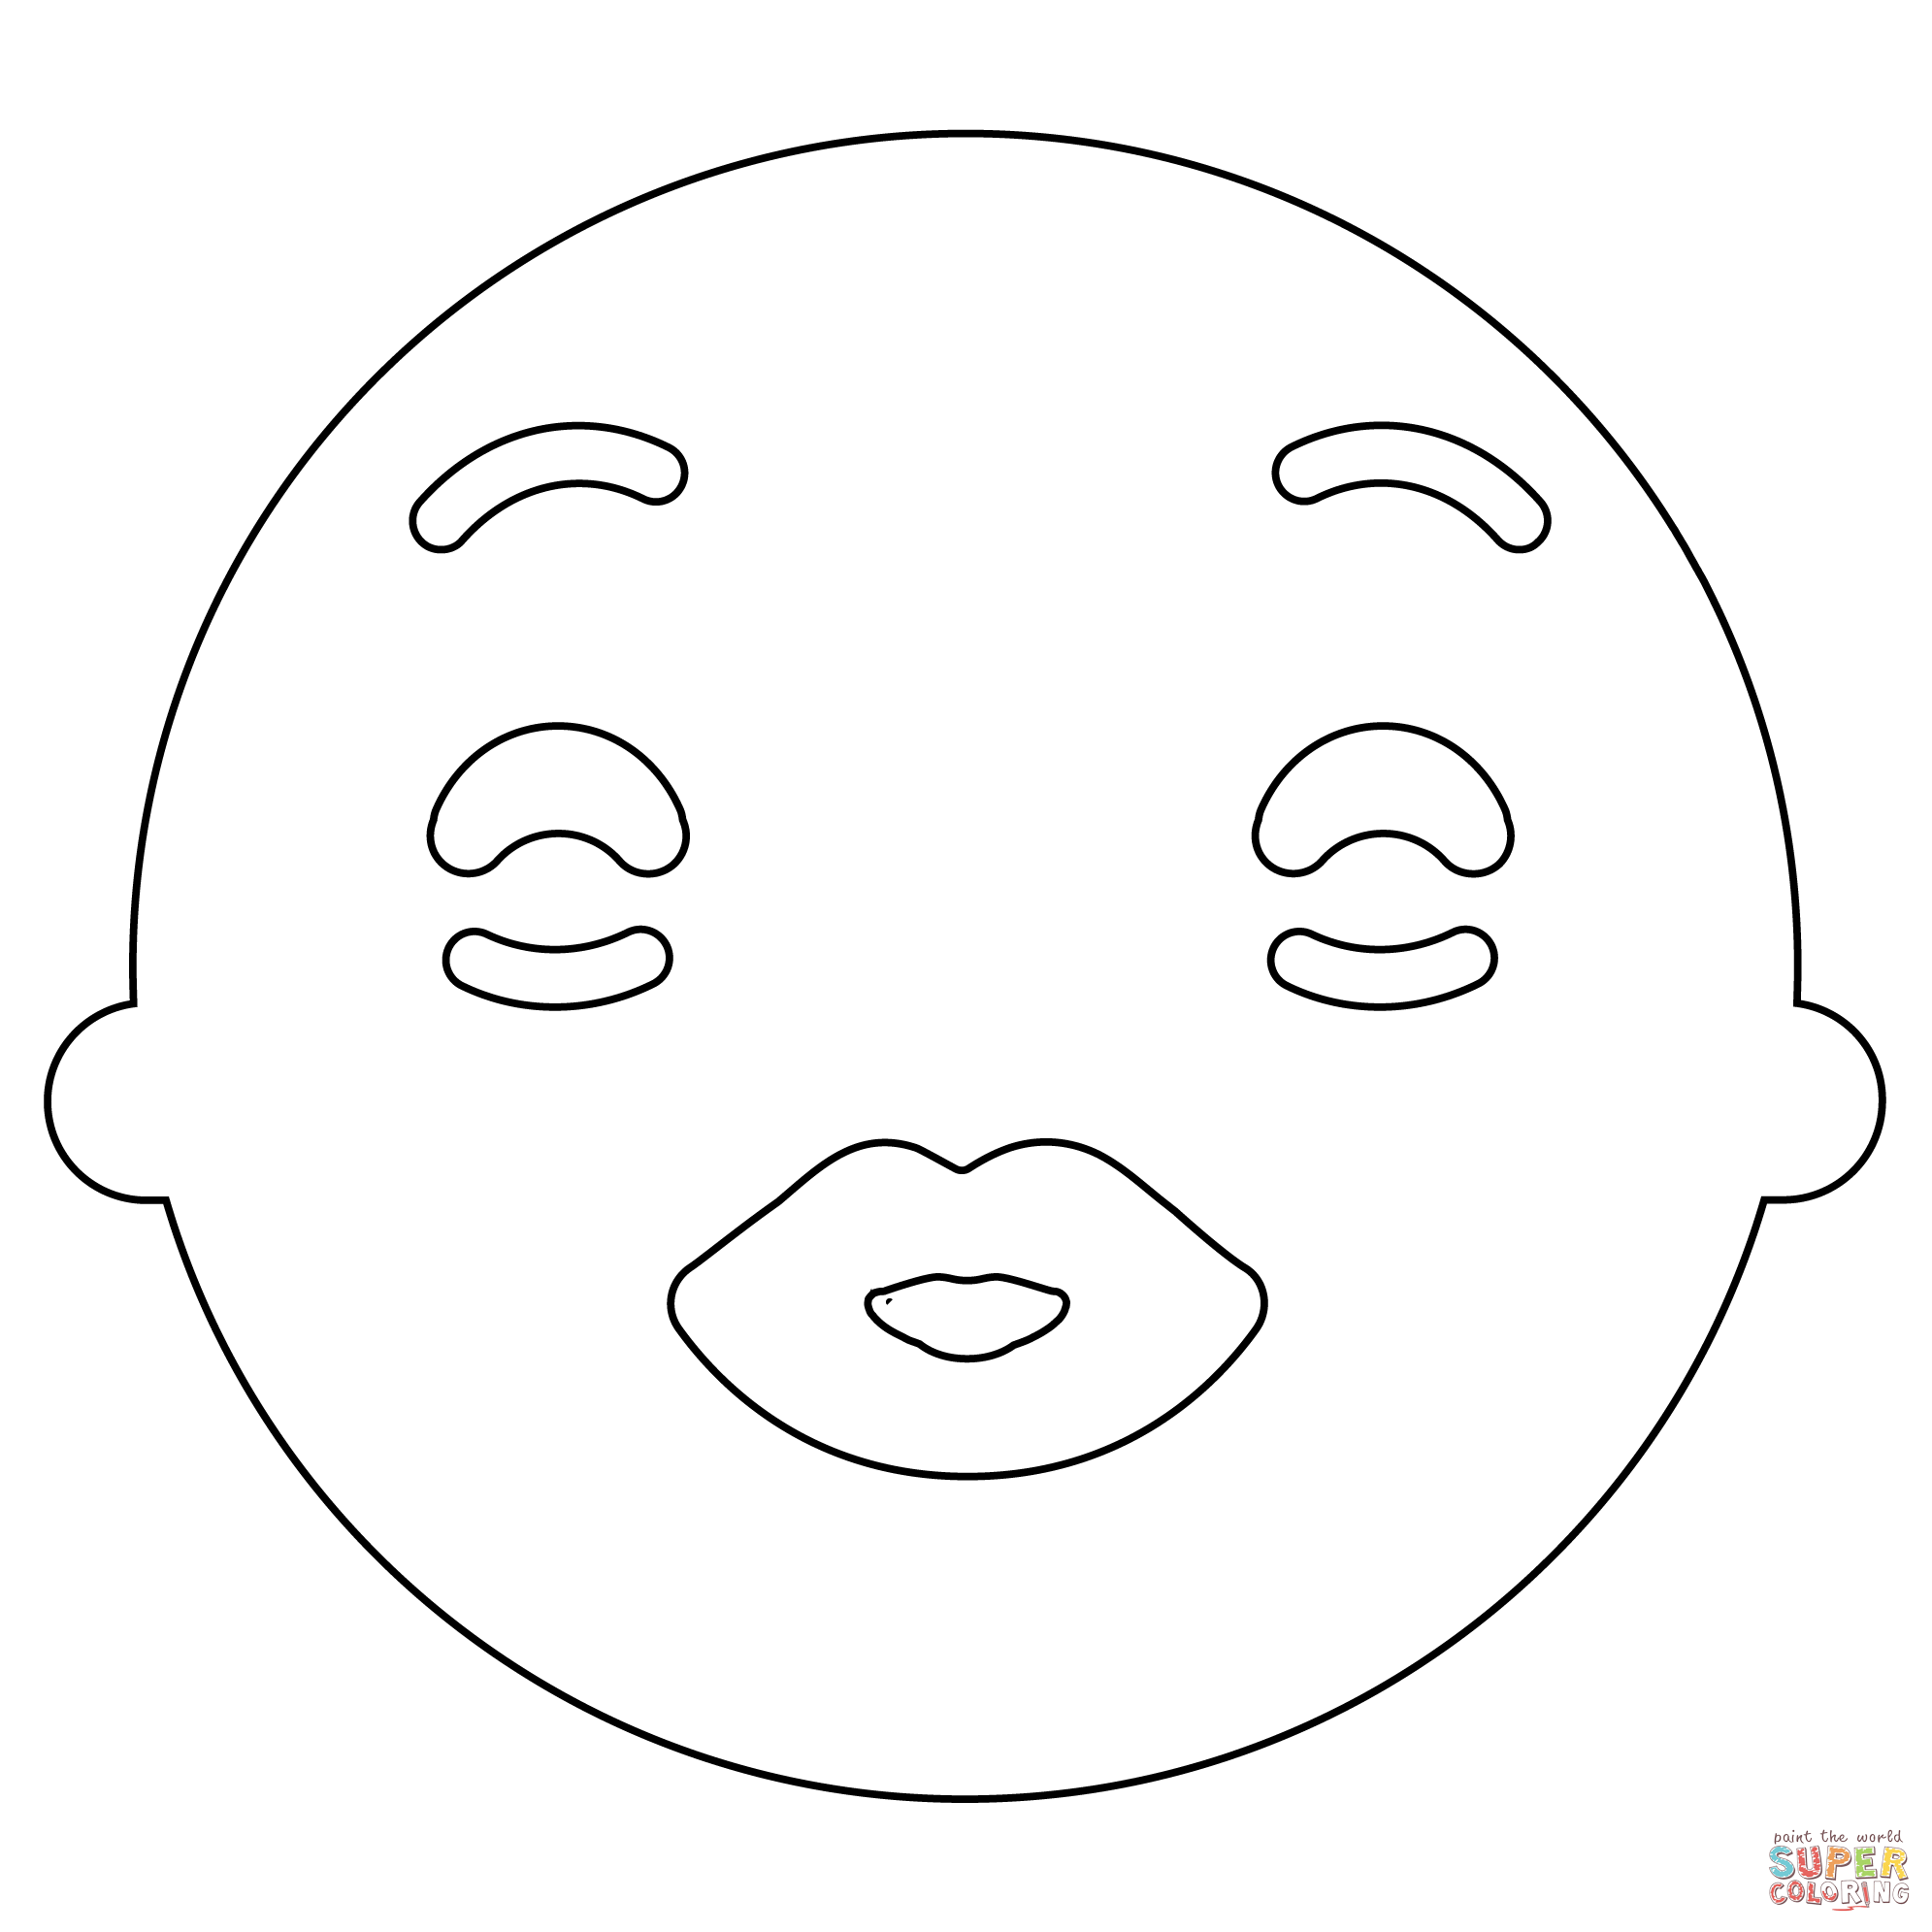 Dibujo de beso con emoji de cara de ojos abiertos para colorear dibujos para colorear imprimir gratis